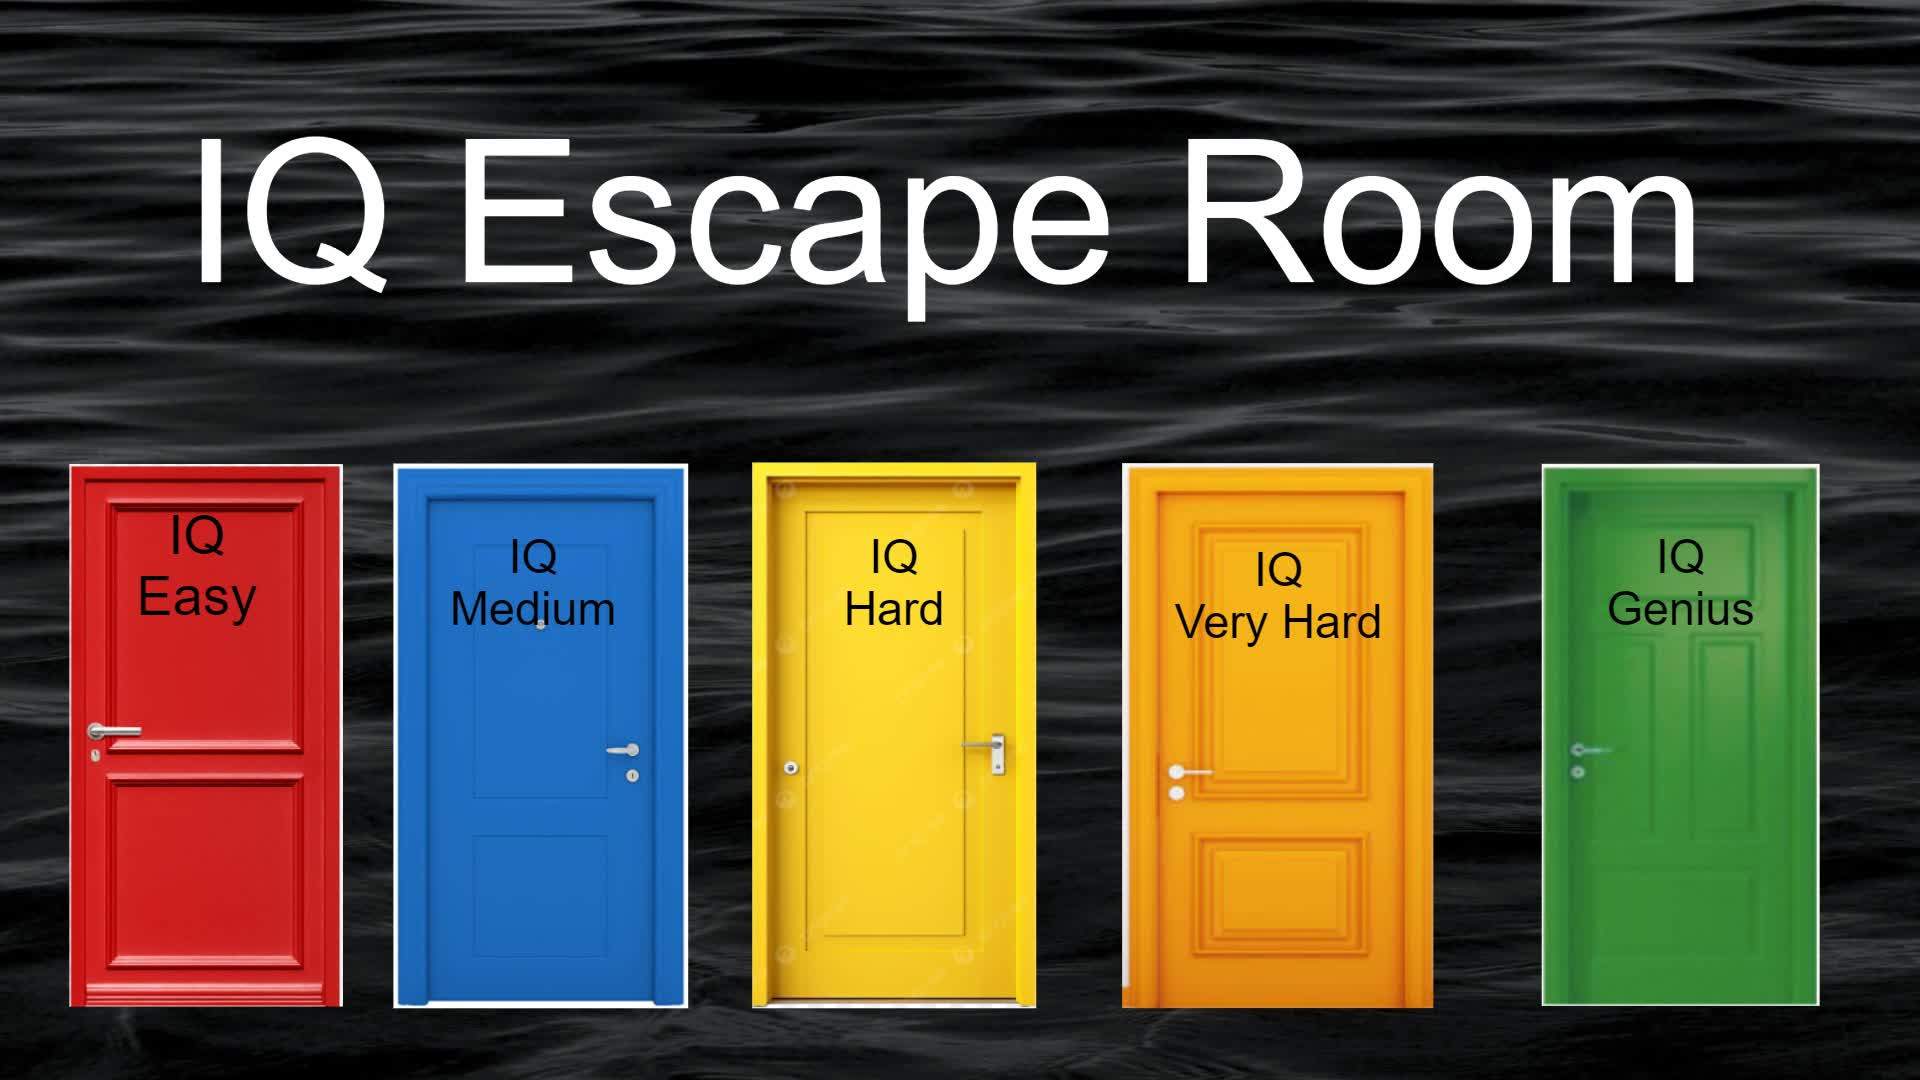 IQ Escape Room